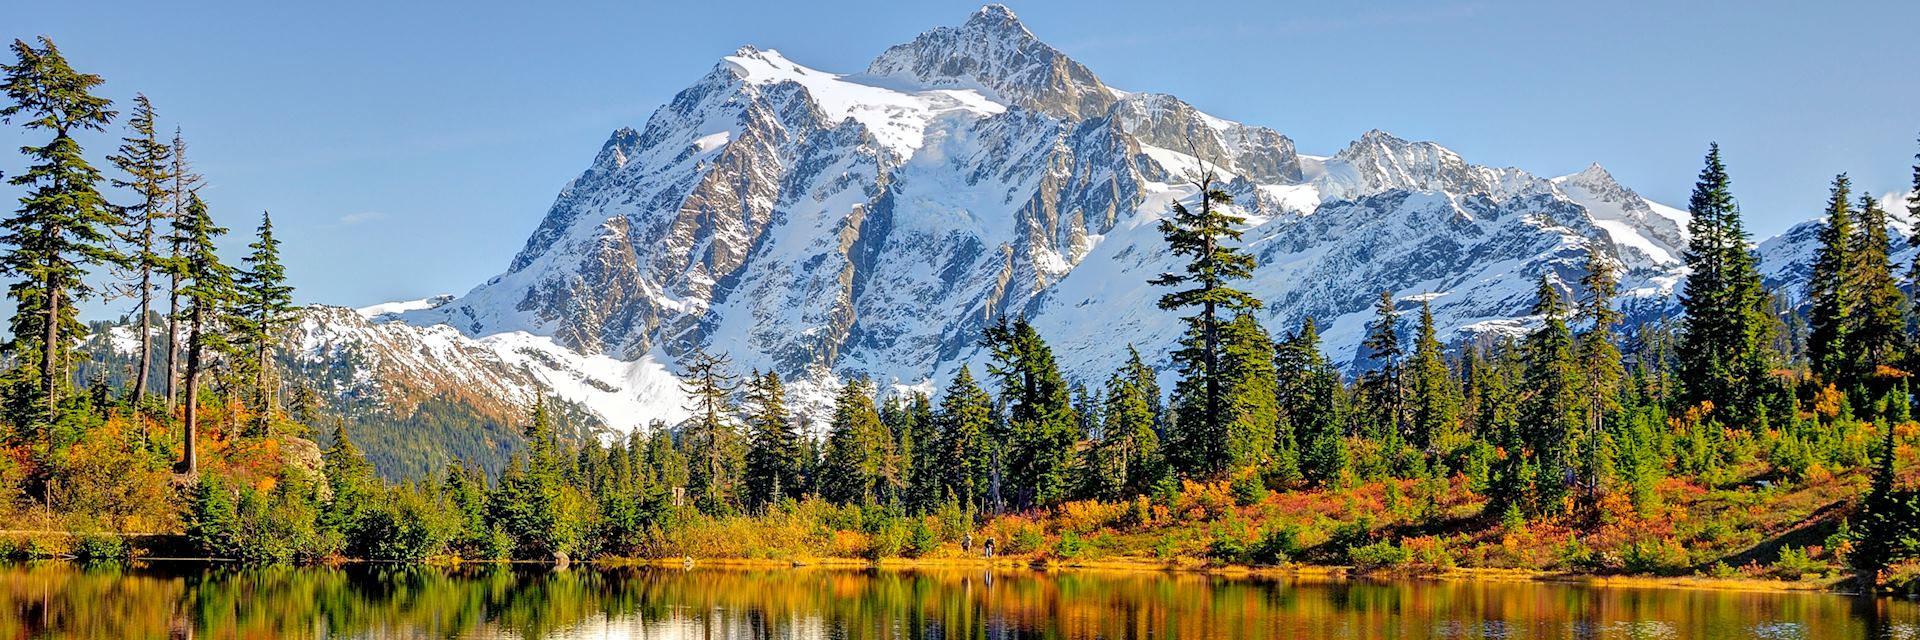 Mount Shuksan, Washington State